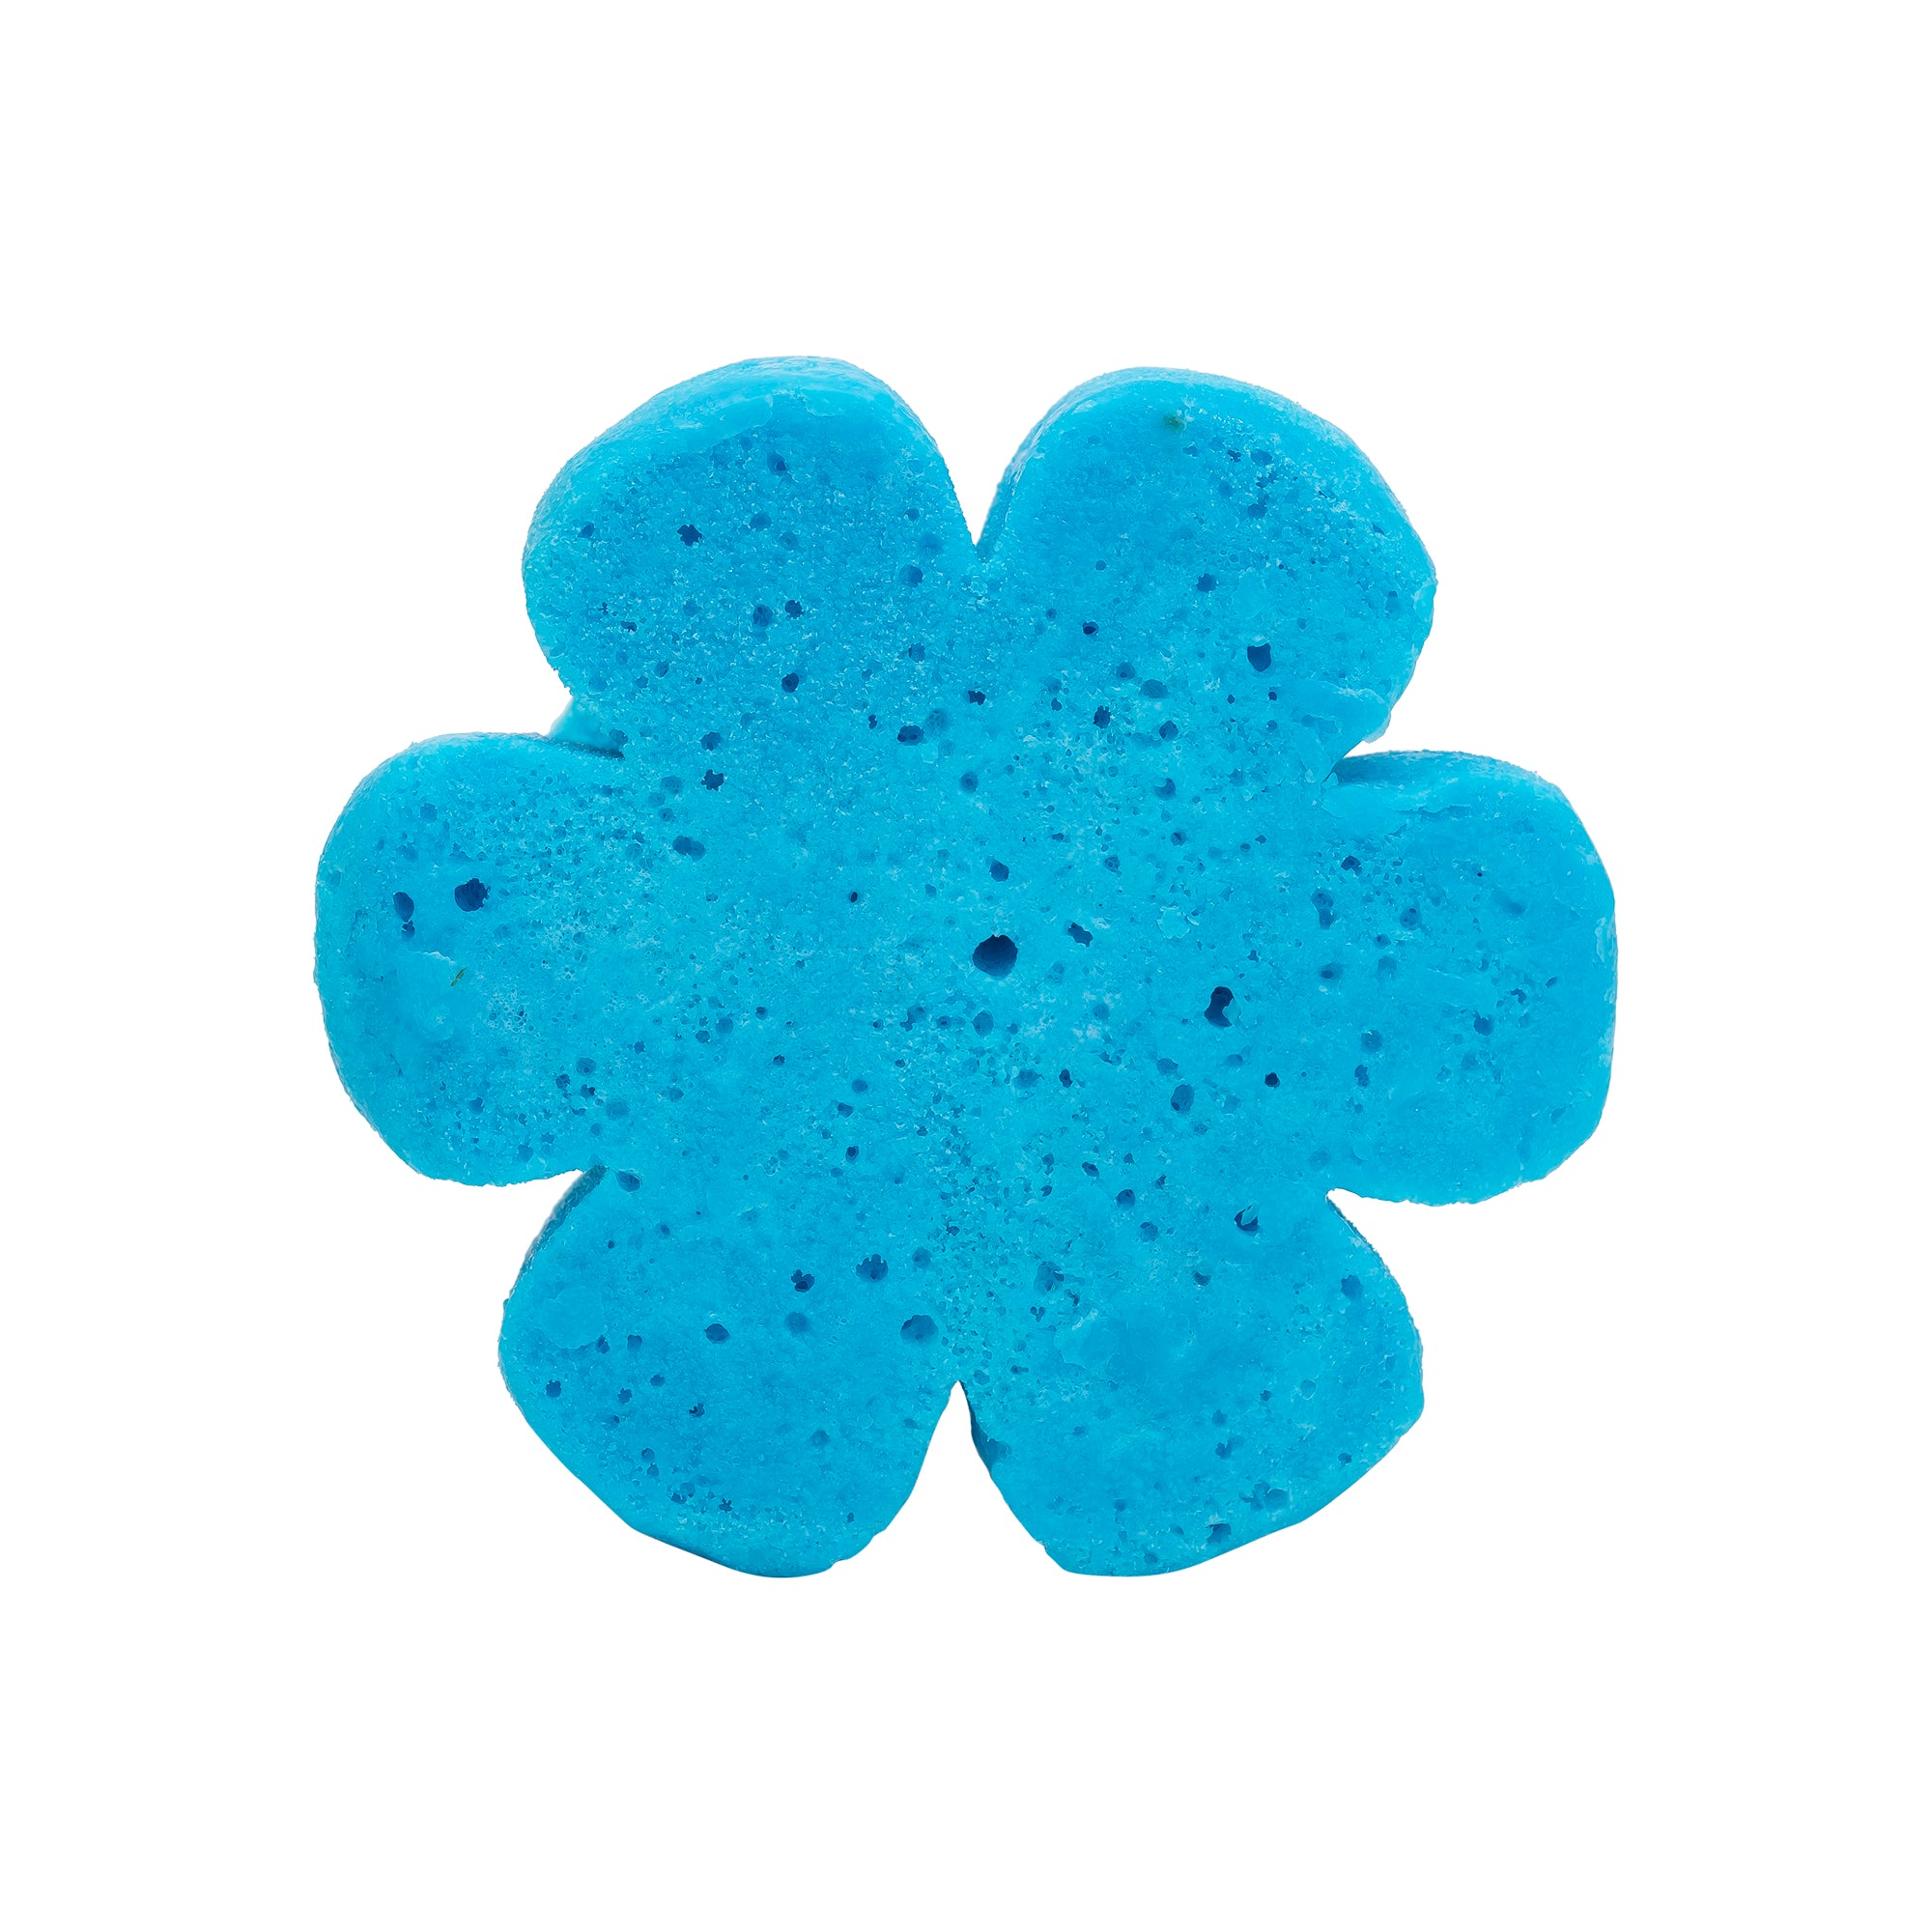 Soap Spongie-Blooming Bubbles